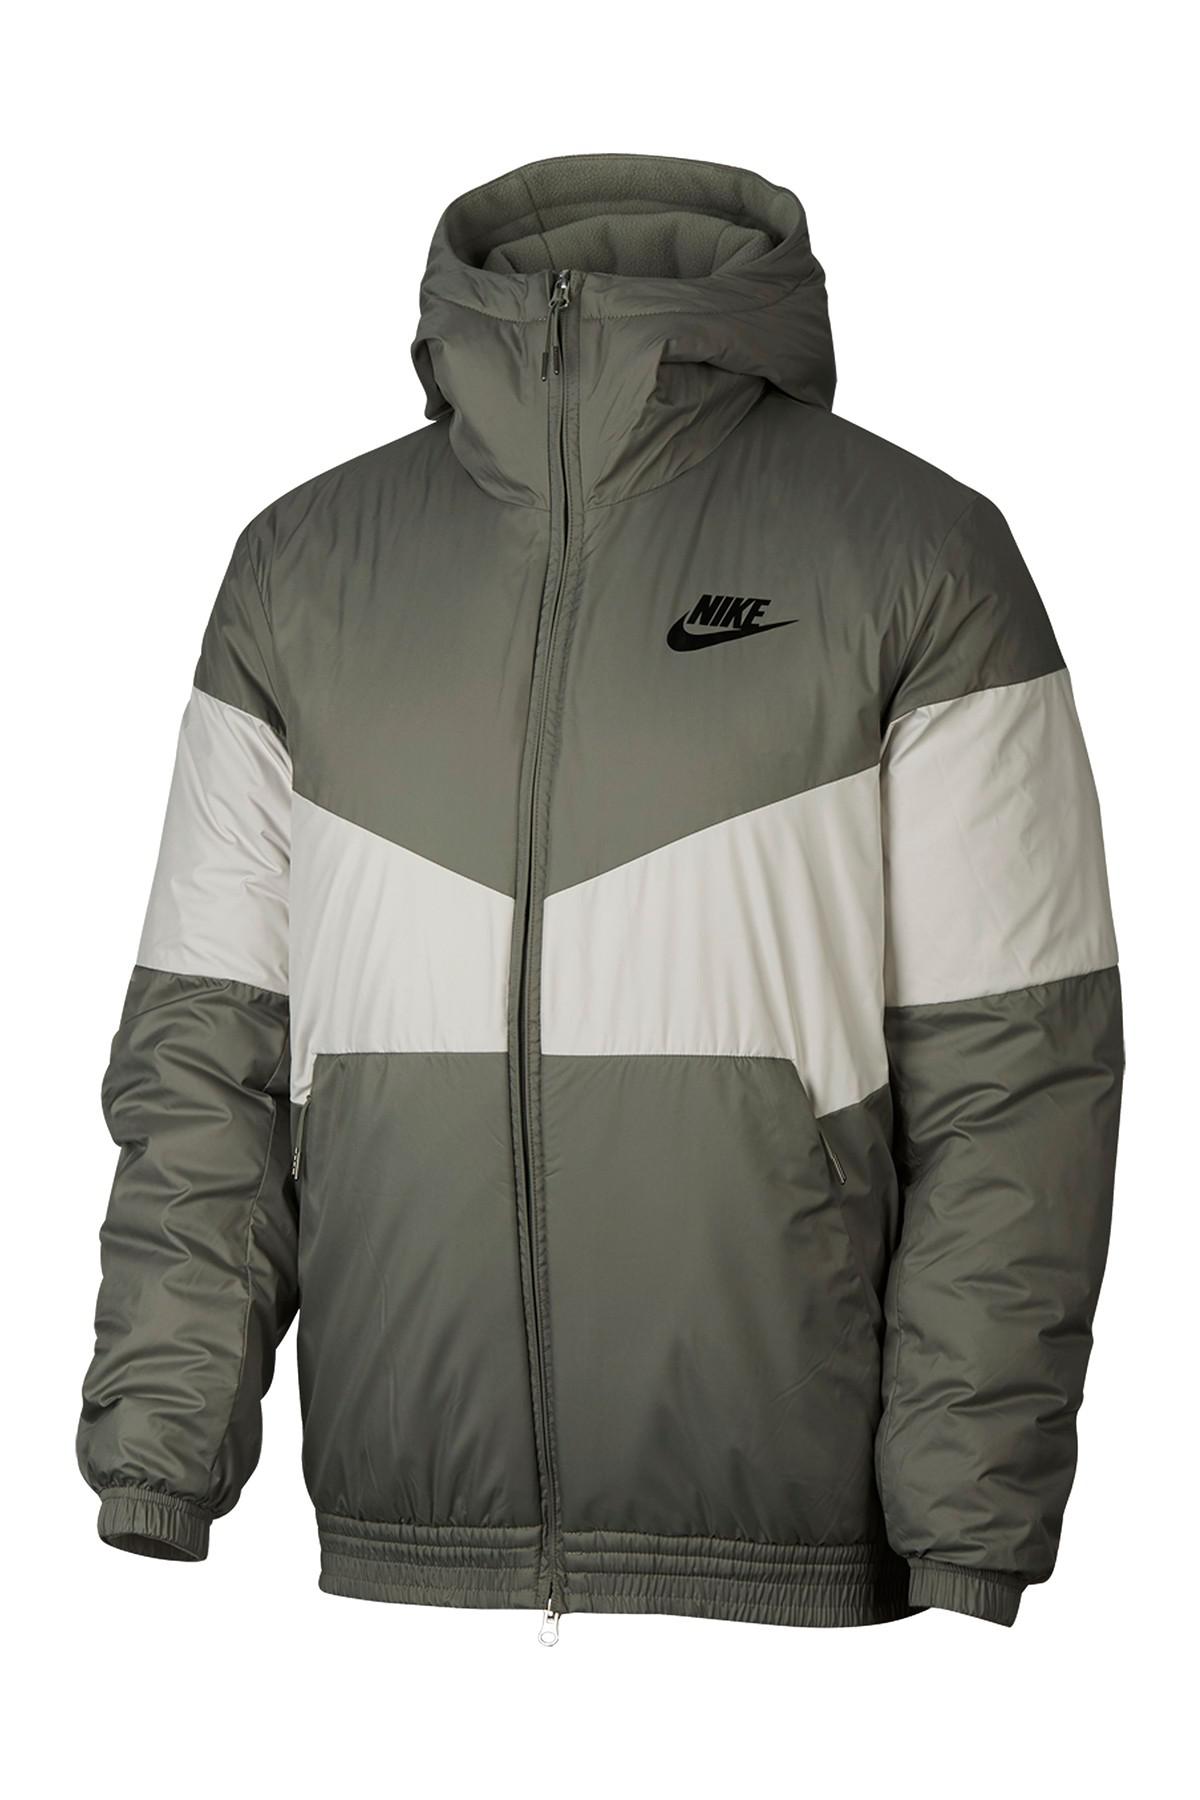 fila sherpa fleece jacket